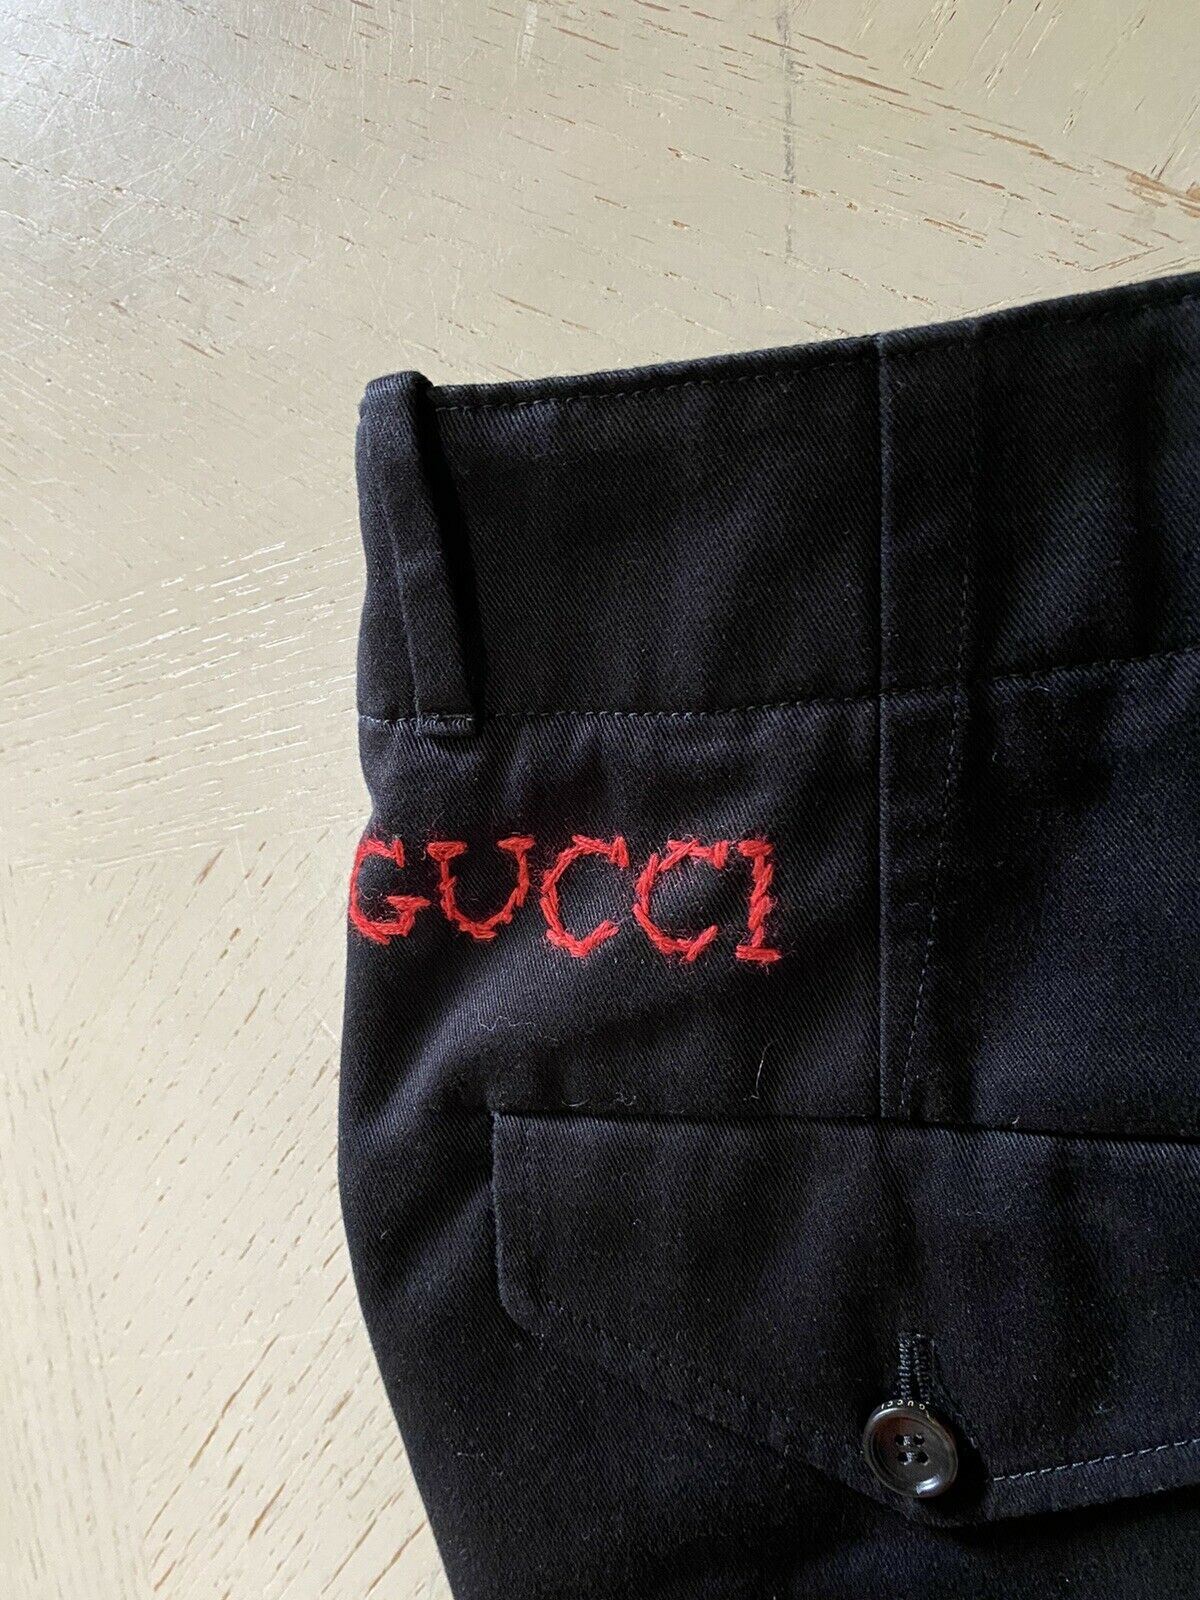 Neu mit Etikett: Gucci Herren-Kurzhose aus Militär-Baumwolle, Schwarz, Größe 32, US-Italien